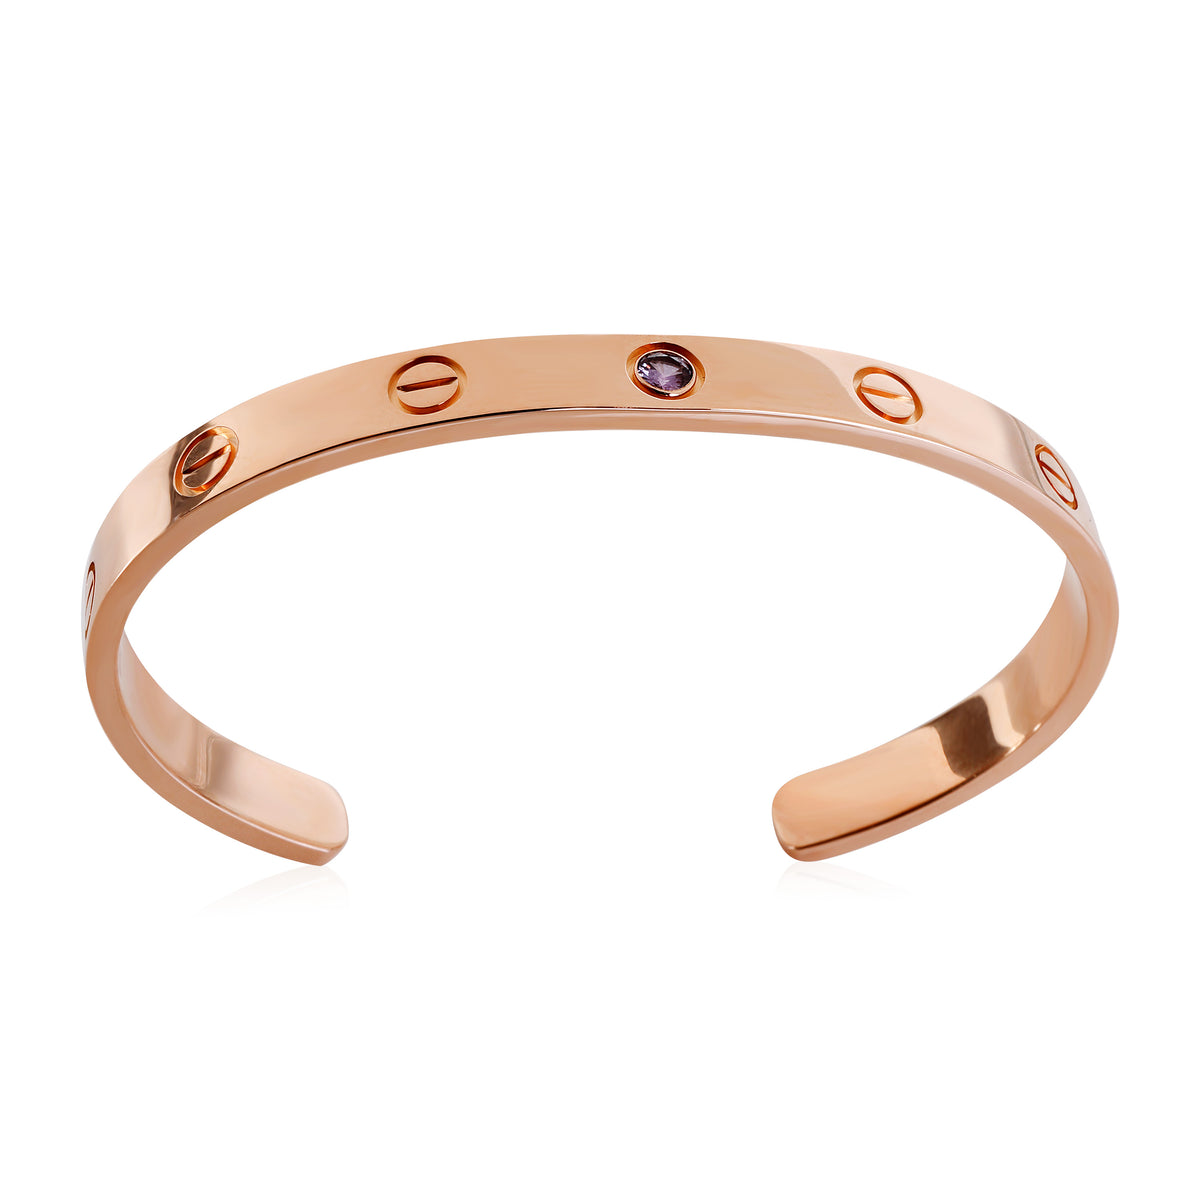 Cartier Love Amethyst Cuff Bracelet in 18k Rose Gold